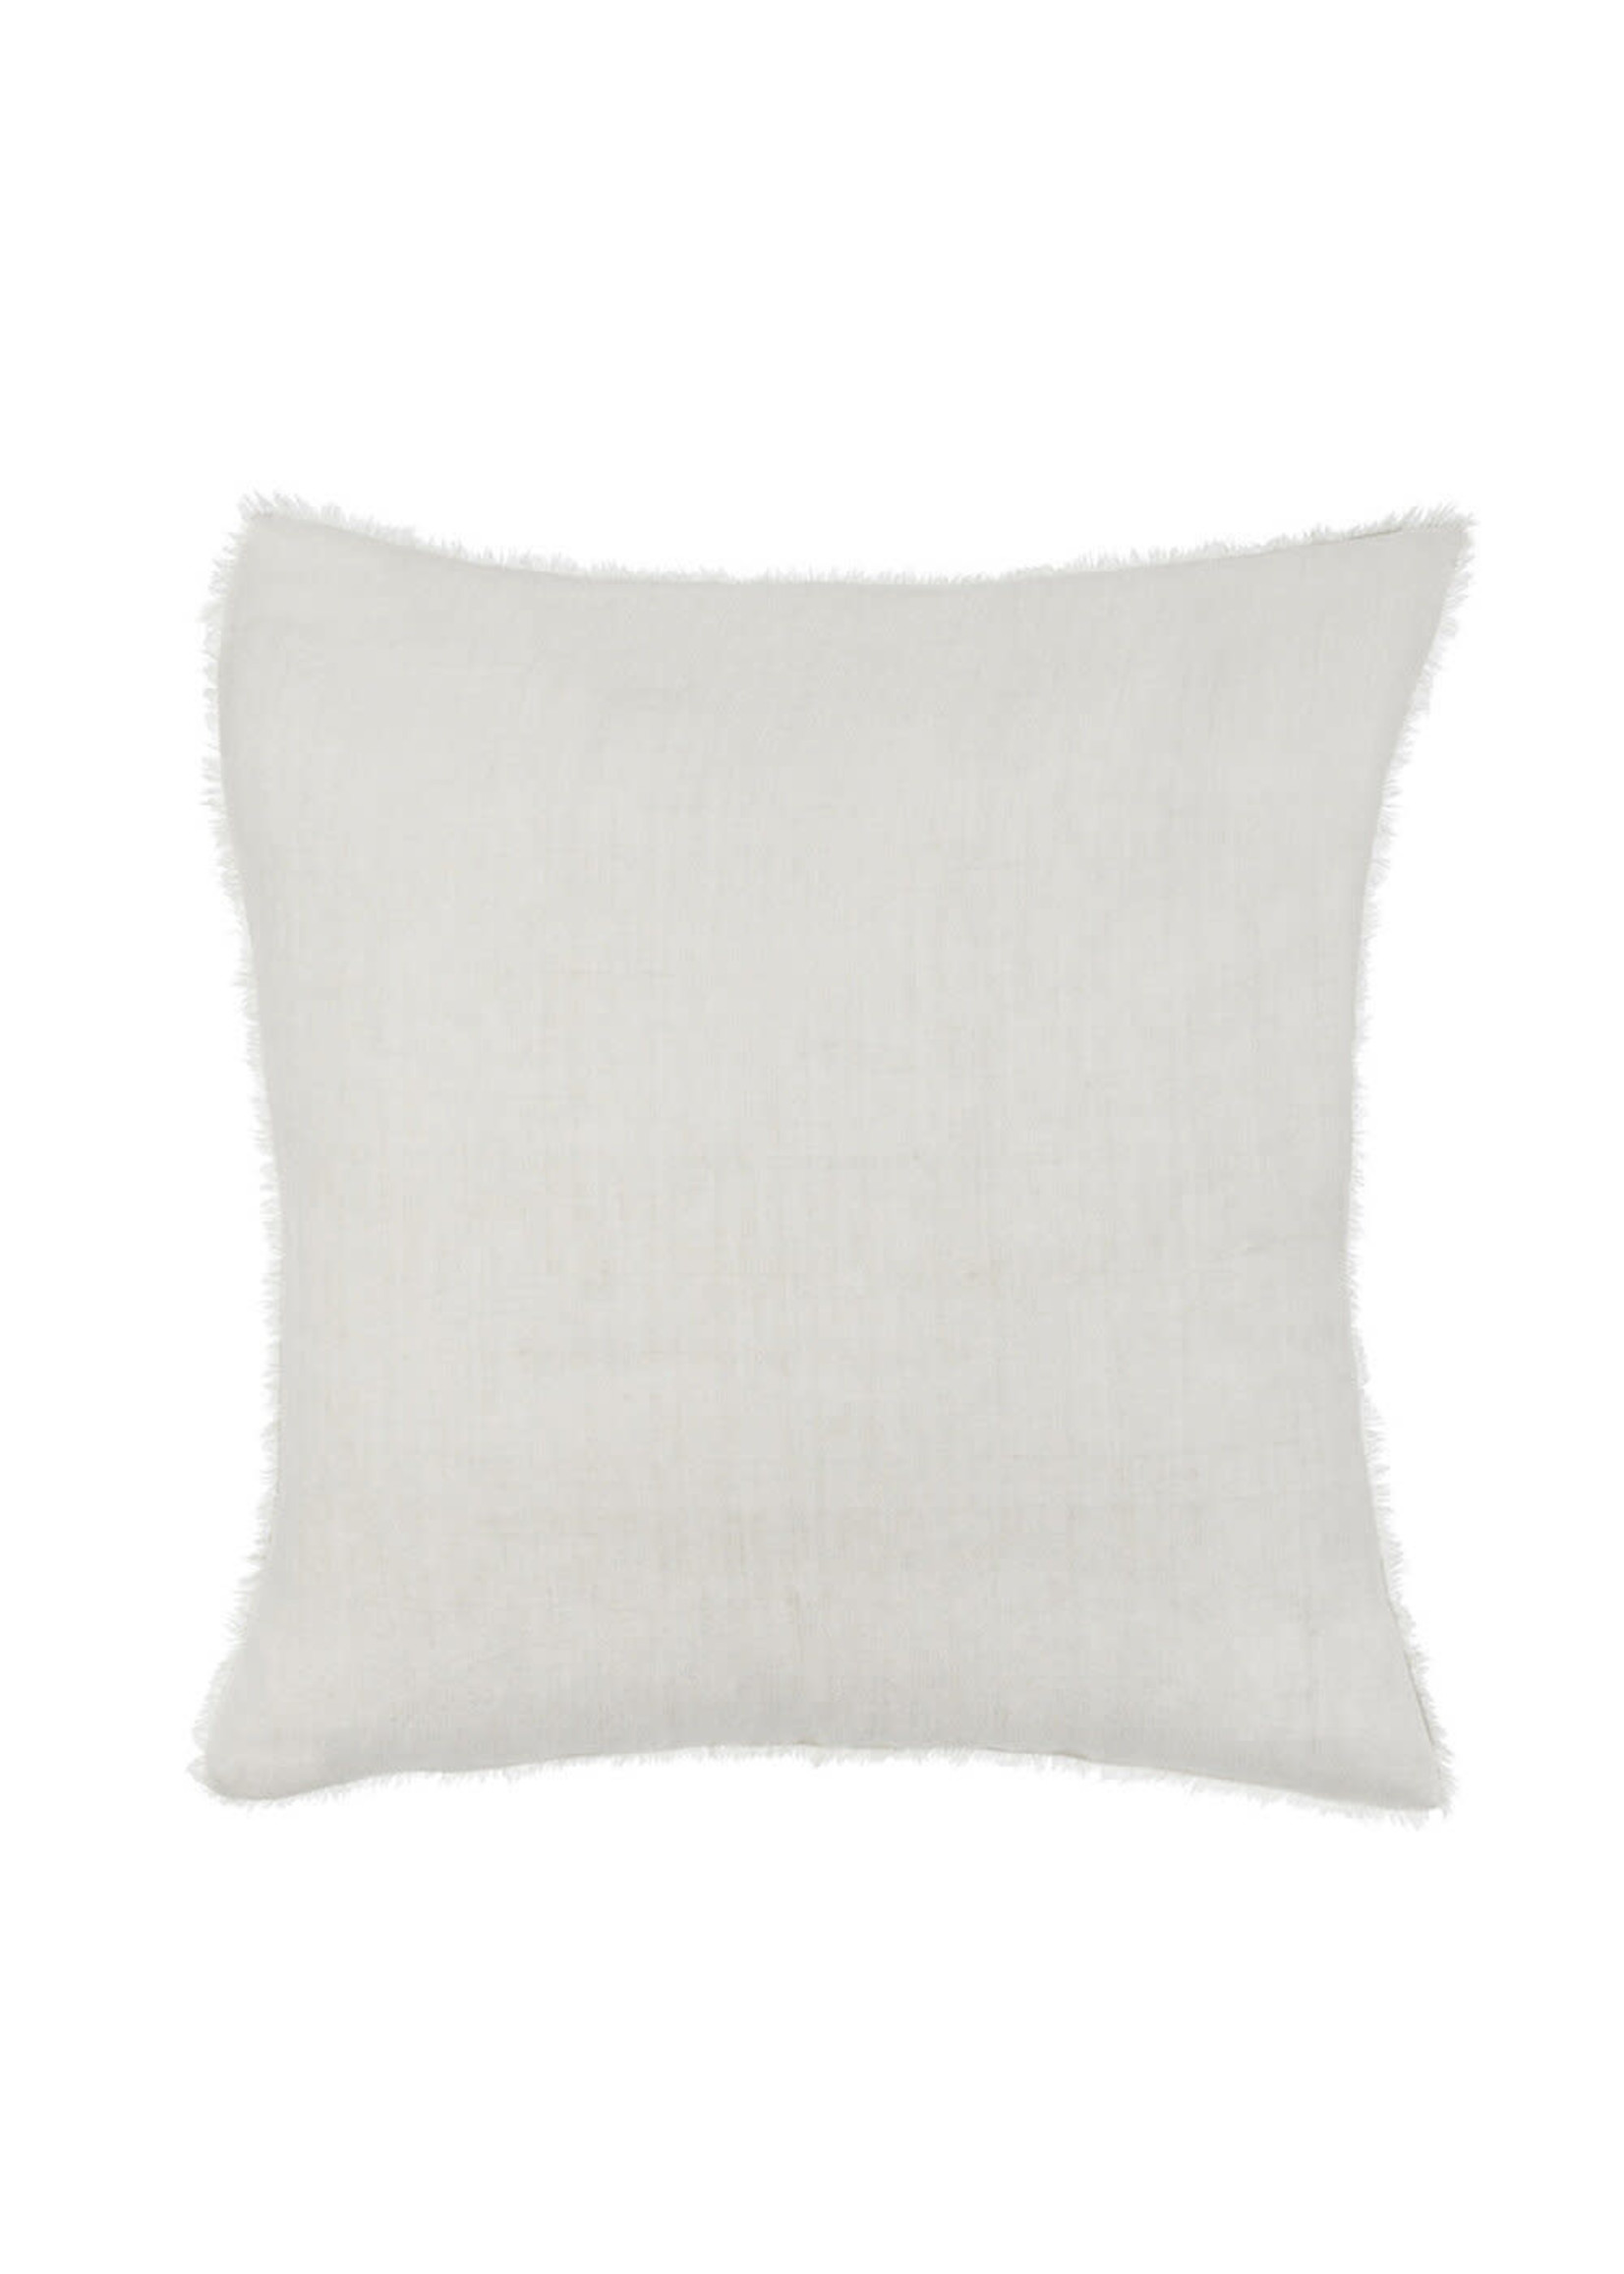 Indaba Indaba Selena Linen Pillow, Natural. 20X20